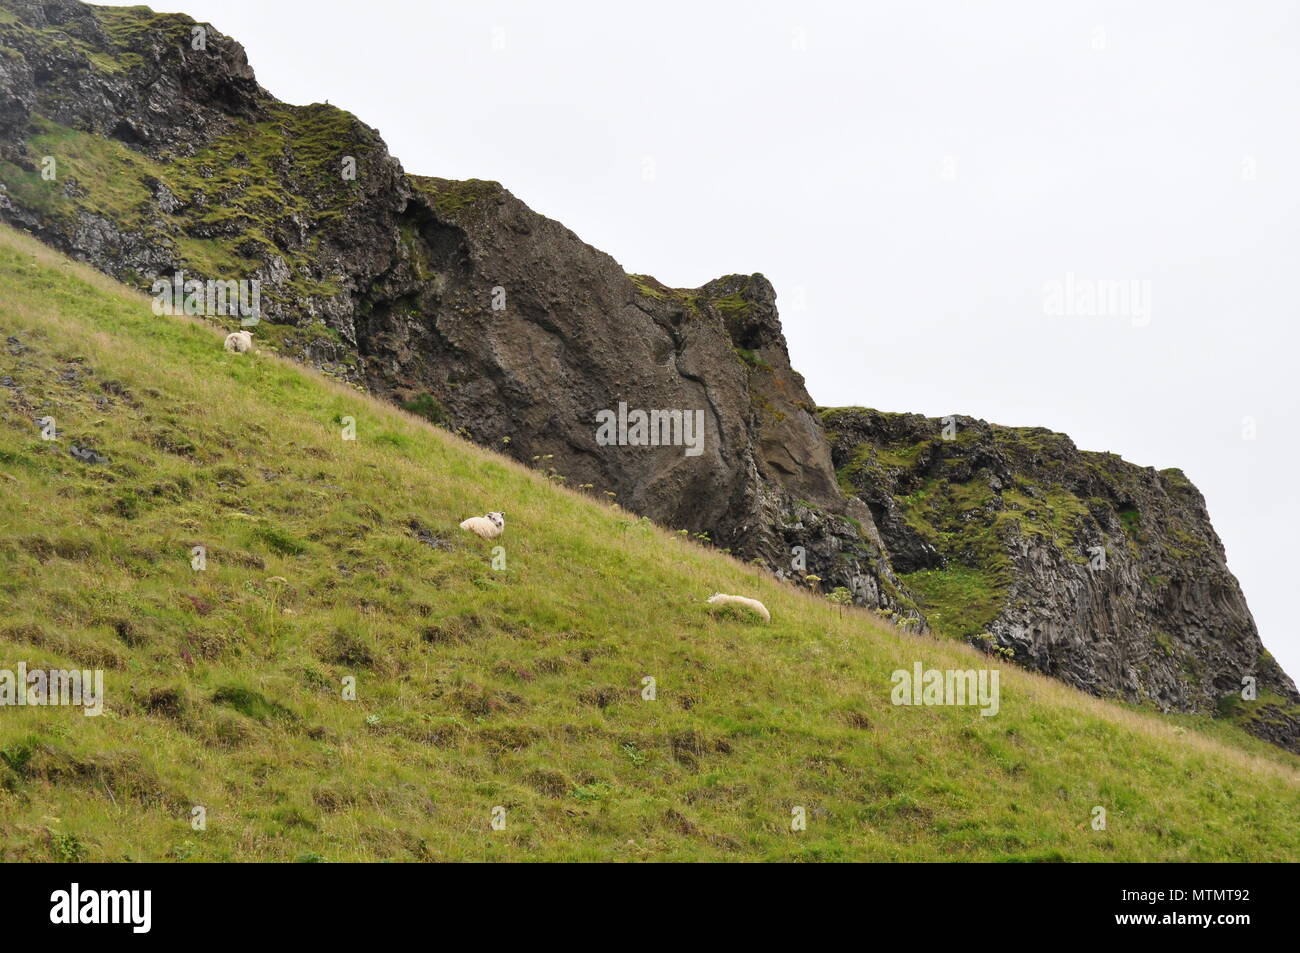 Moutons sur la colline d'herbe, de l'Islande Banque D'Images